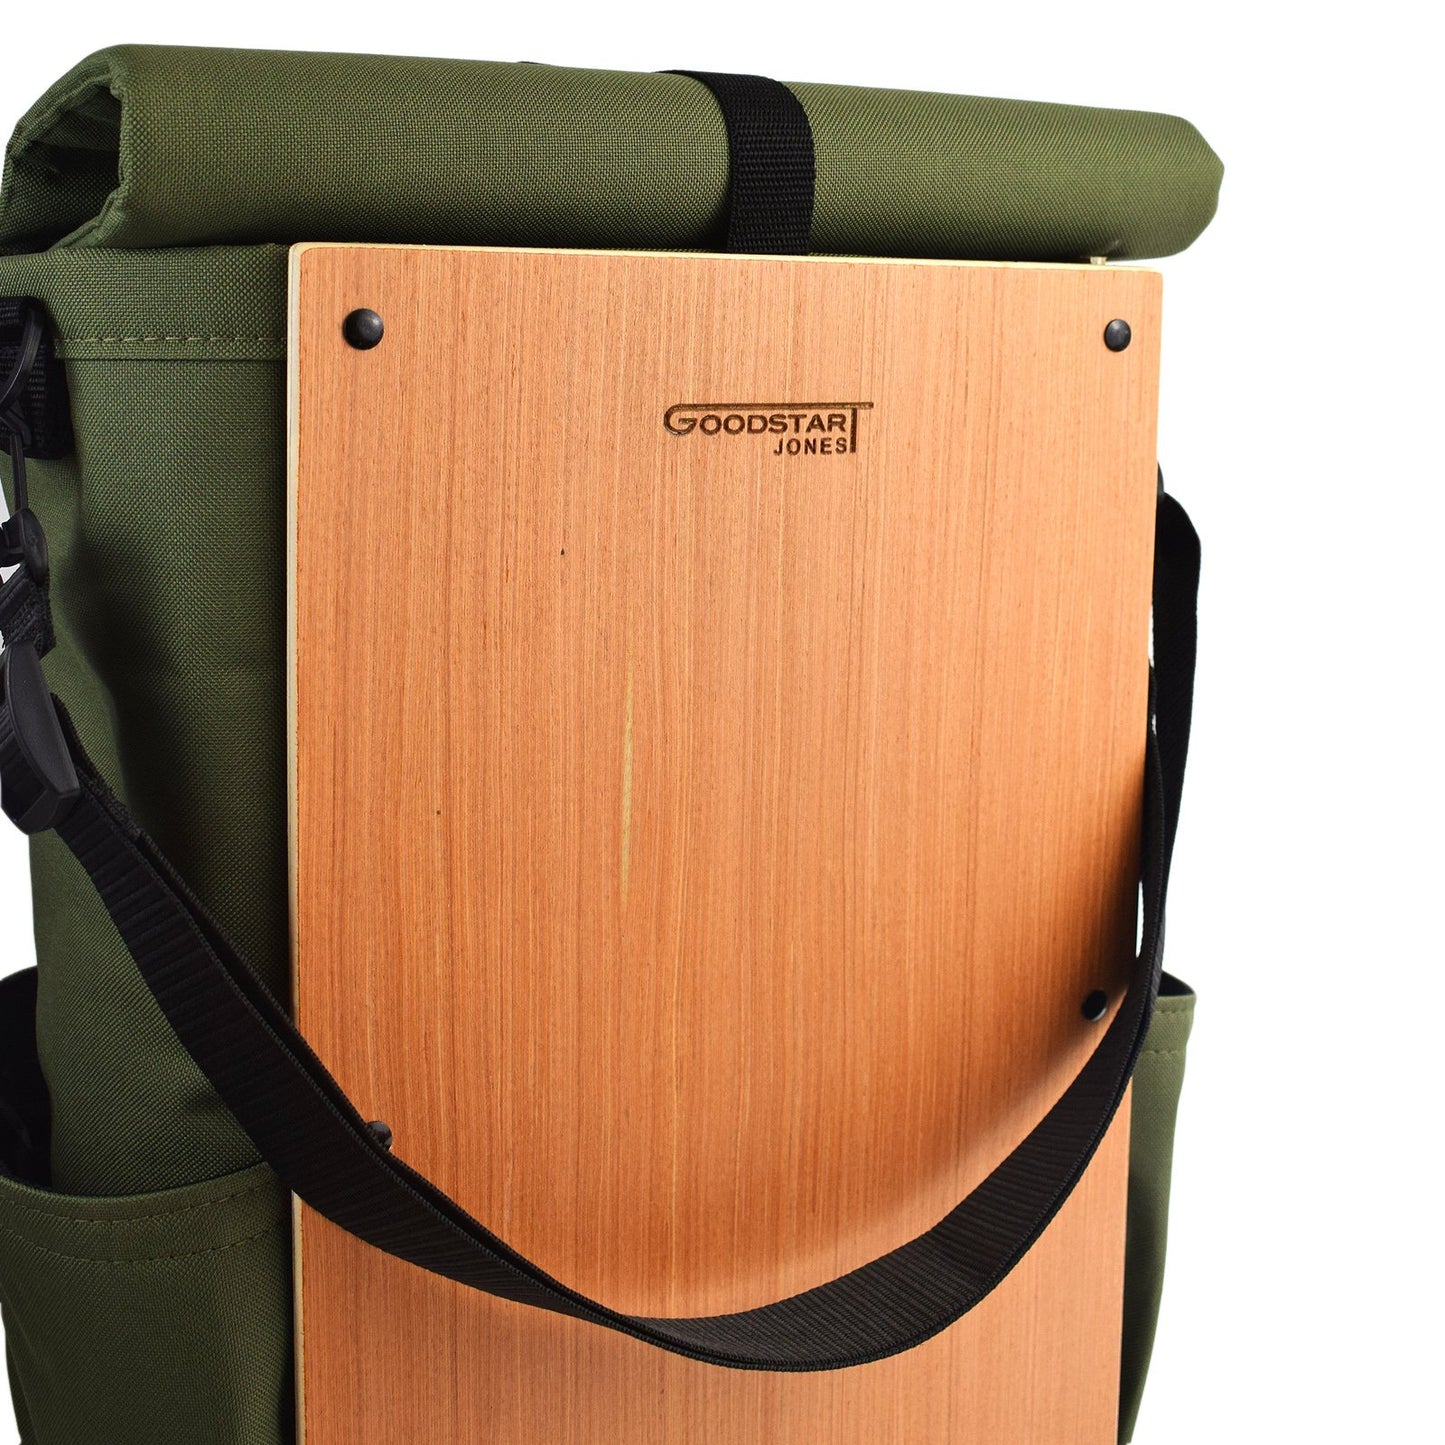 Goodstart Jones woodsack backpack wood panel logo